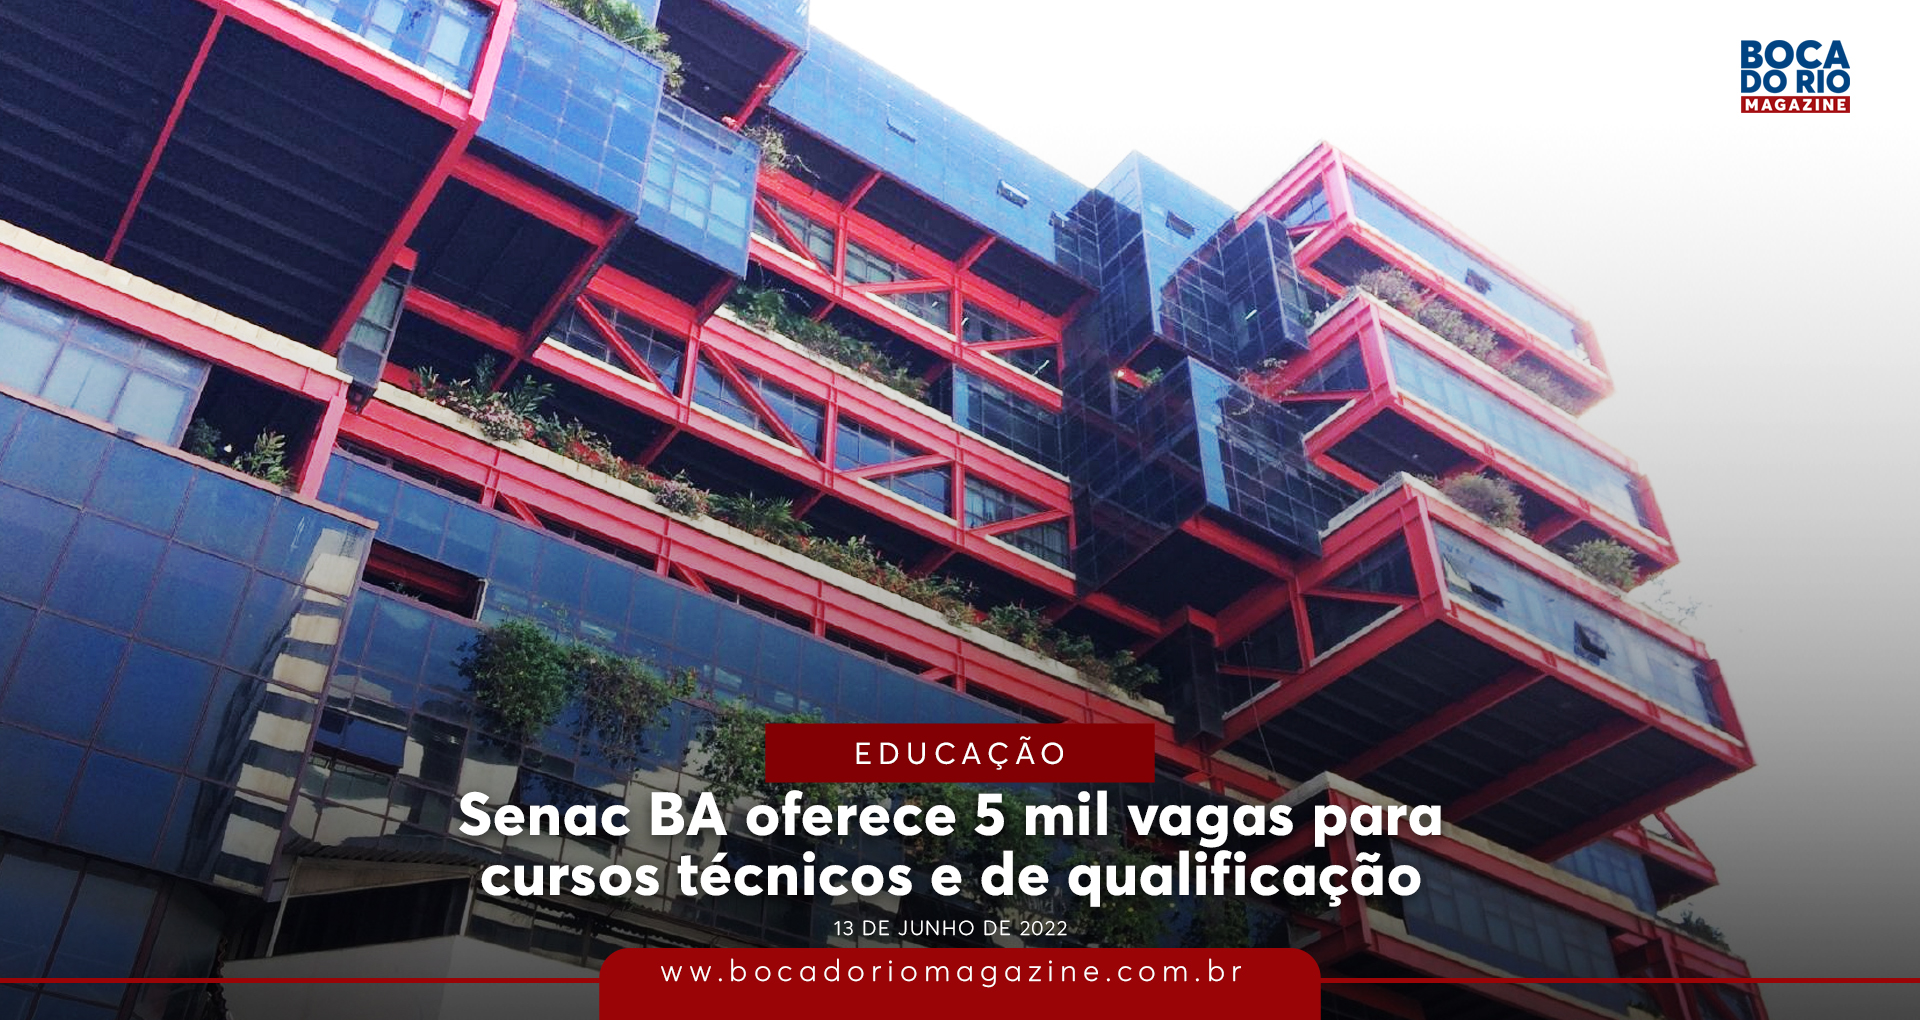 Senac Ba Oferece 5 Mil Vagas Para Cursos Técnicos E De Qualificação Boca Do Rio Magazine 7478